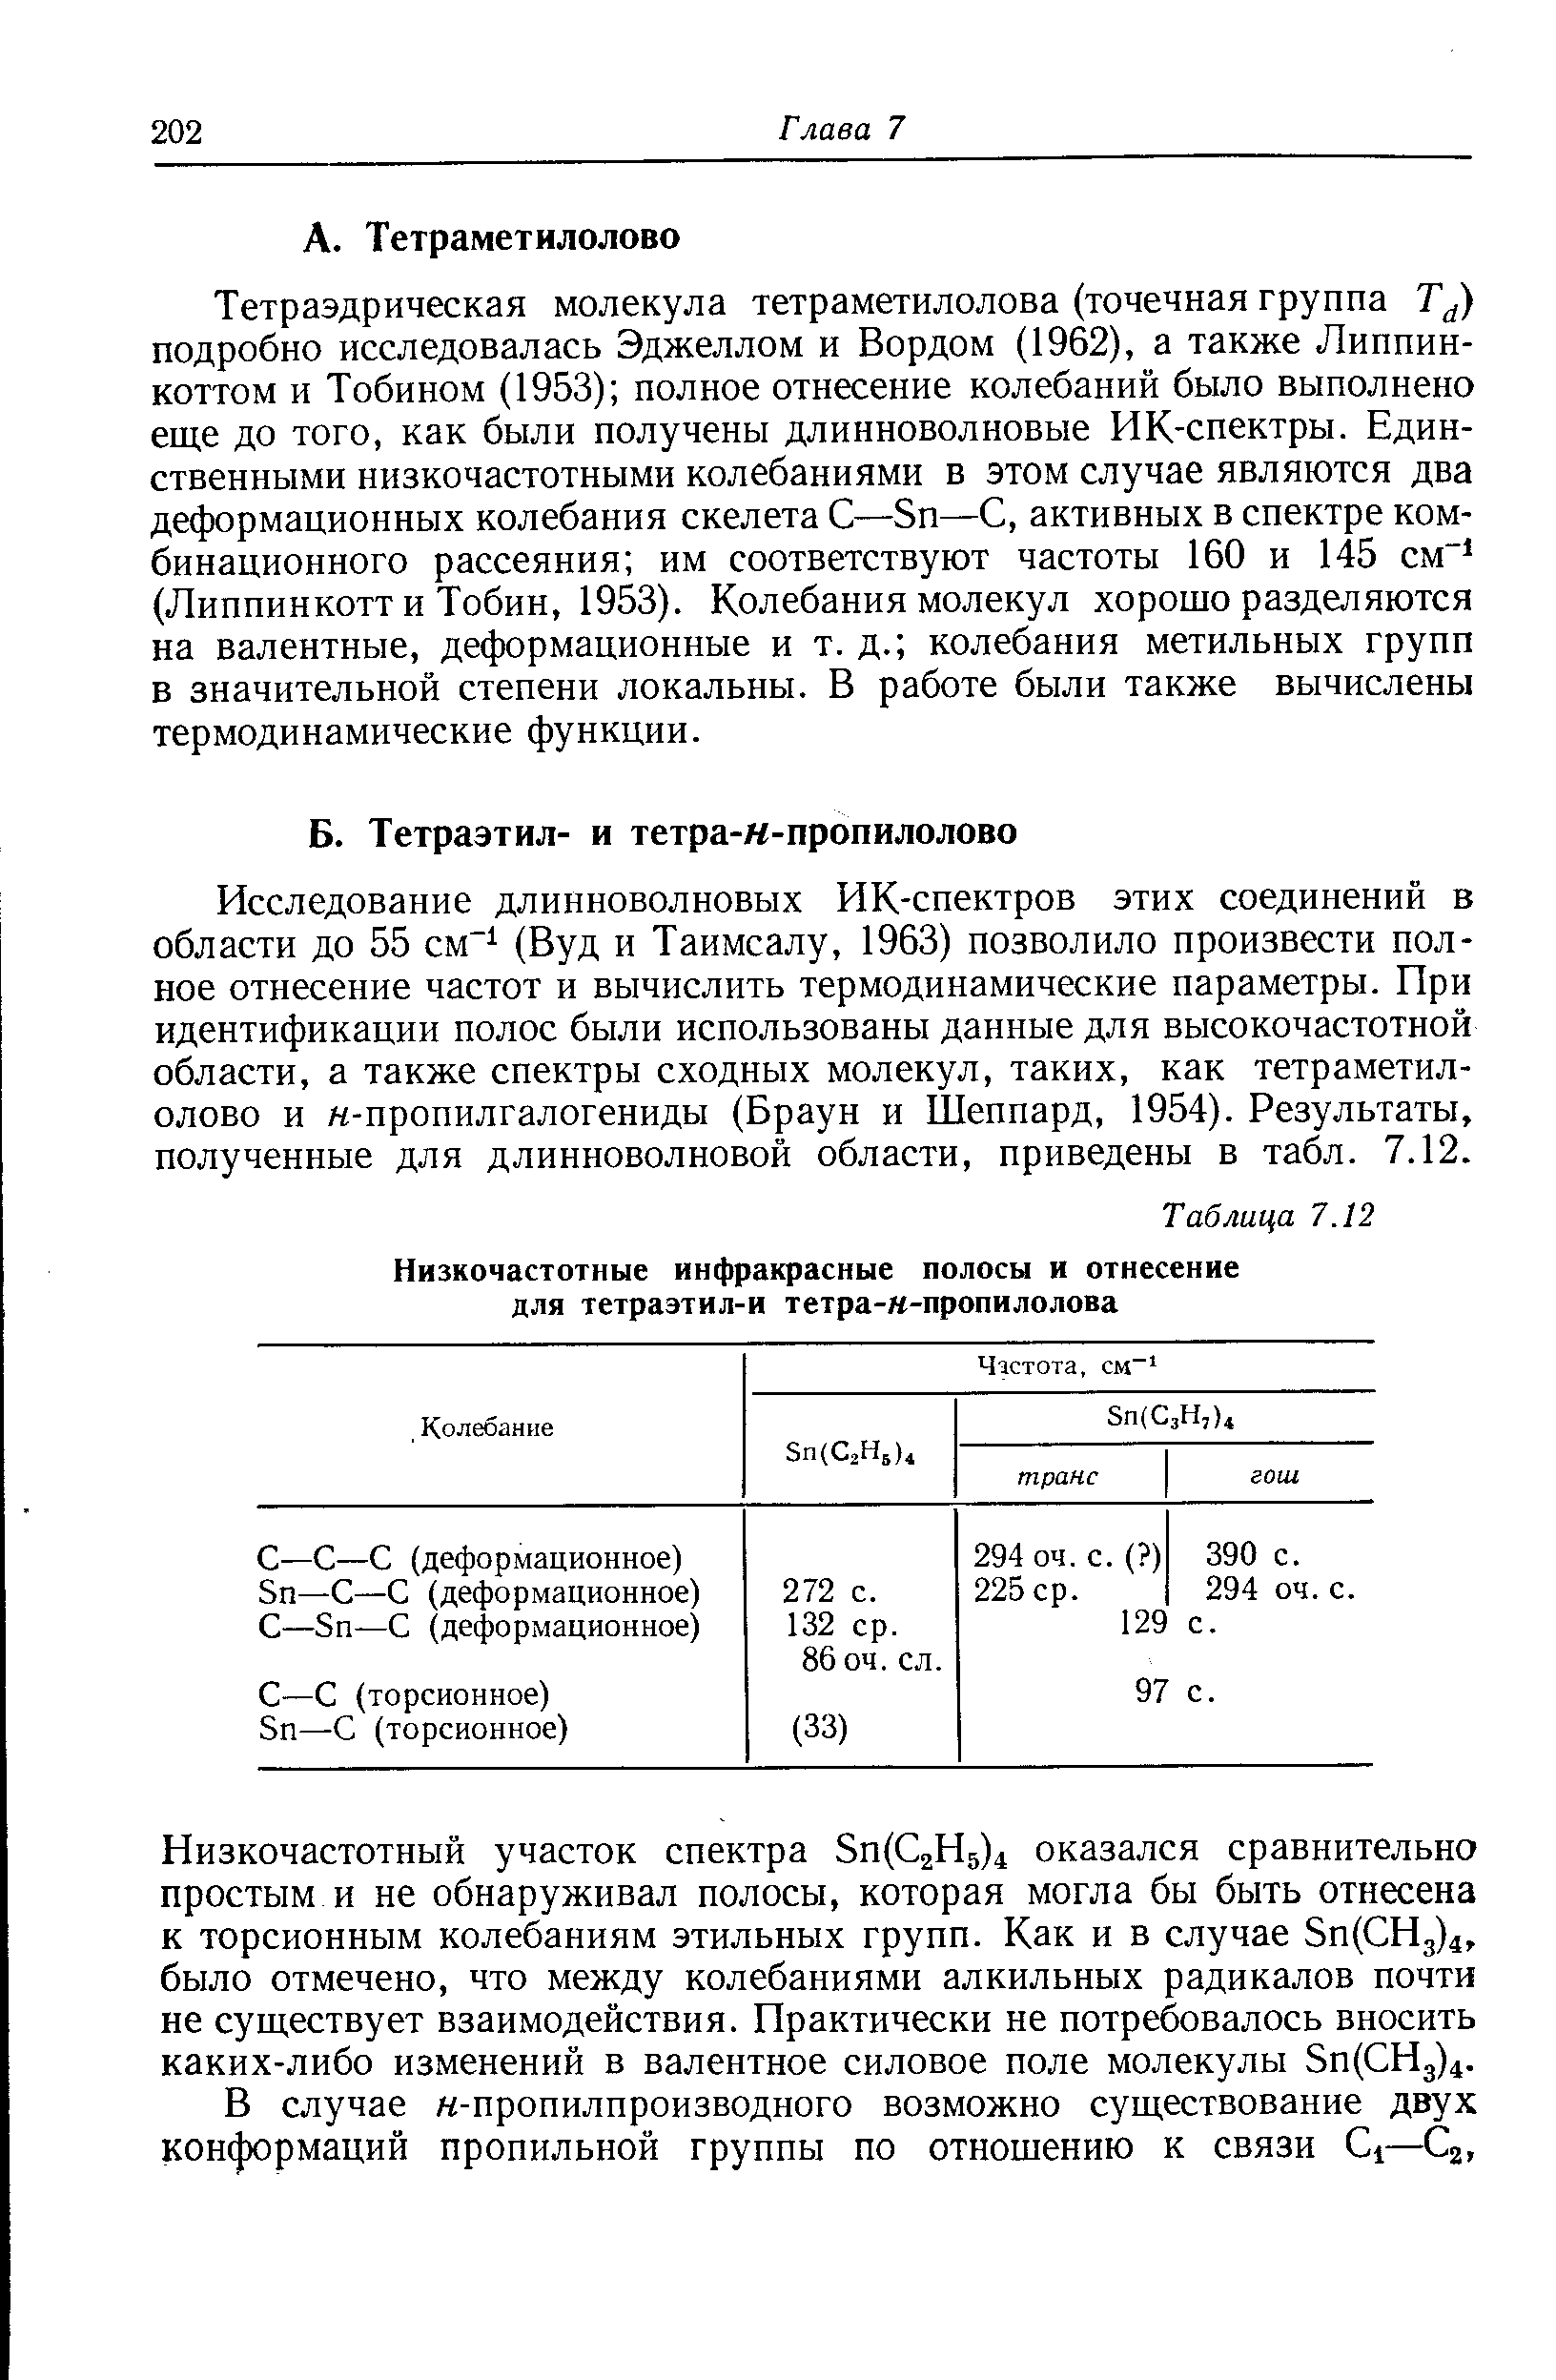 Исследование длинноволновых ИК-спектров этих соединений в области до 55 см (Вуд и Таимсалу, 1963) позволило произвести полное отнесение частот и вычислить термодинамические параметры. При идентификации полос были использованы данные для высокочастотной области, а также спектры сходных молекул, таких, как тетраметилолово и н-пропилгалогениды (Браун и Шеппард, 1954). Результаты, полученные для длинноволновой области, приведены в табл. 7.12.